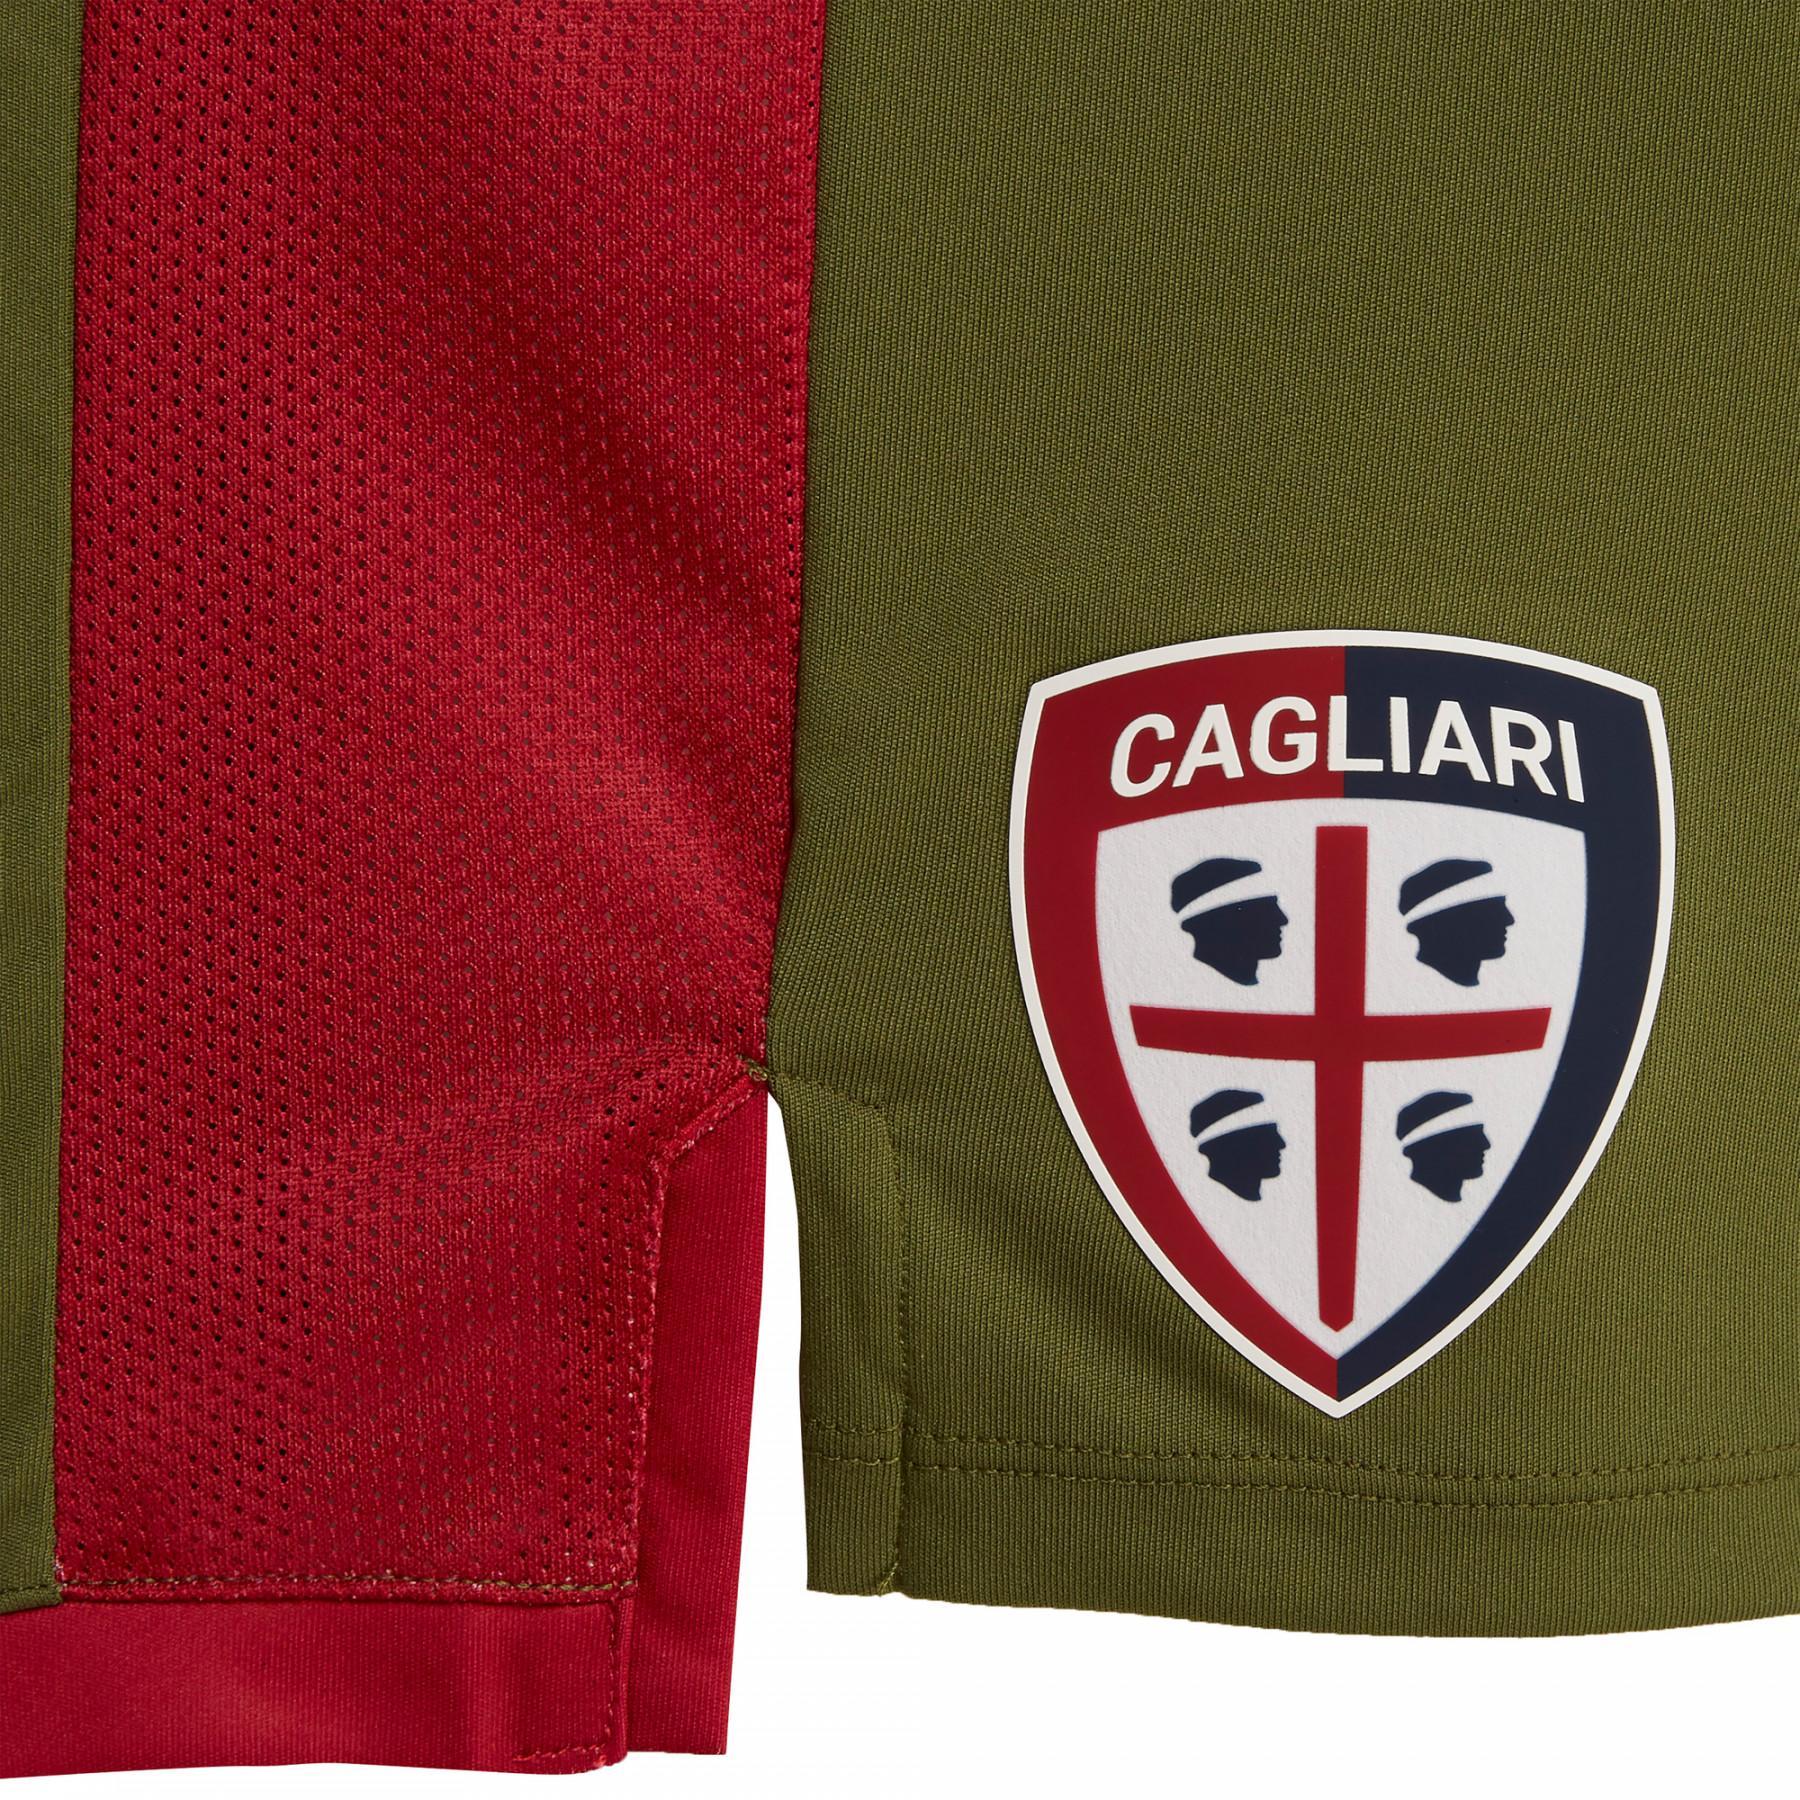 Terza corta Cagliari Calcio 19/20